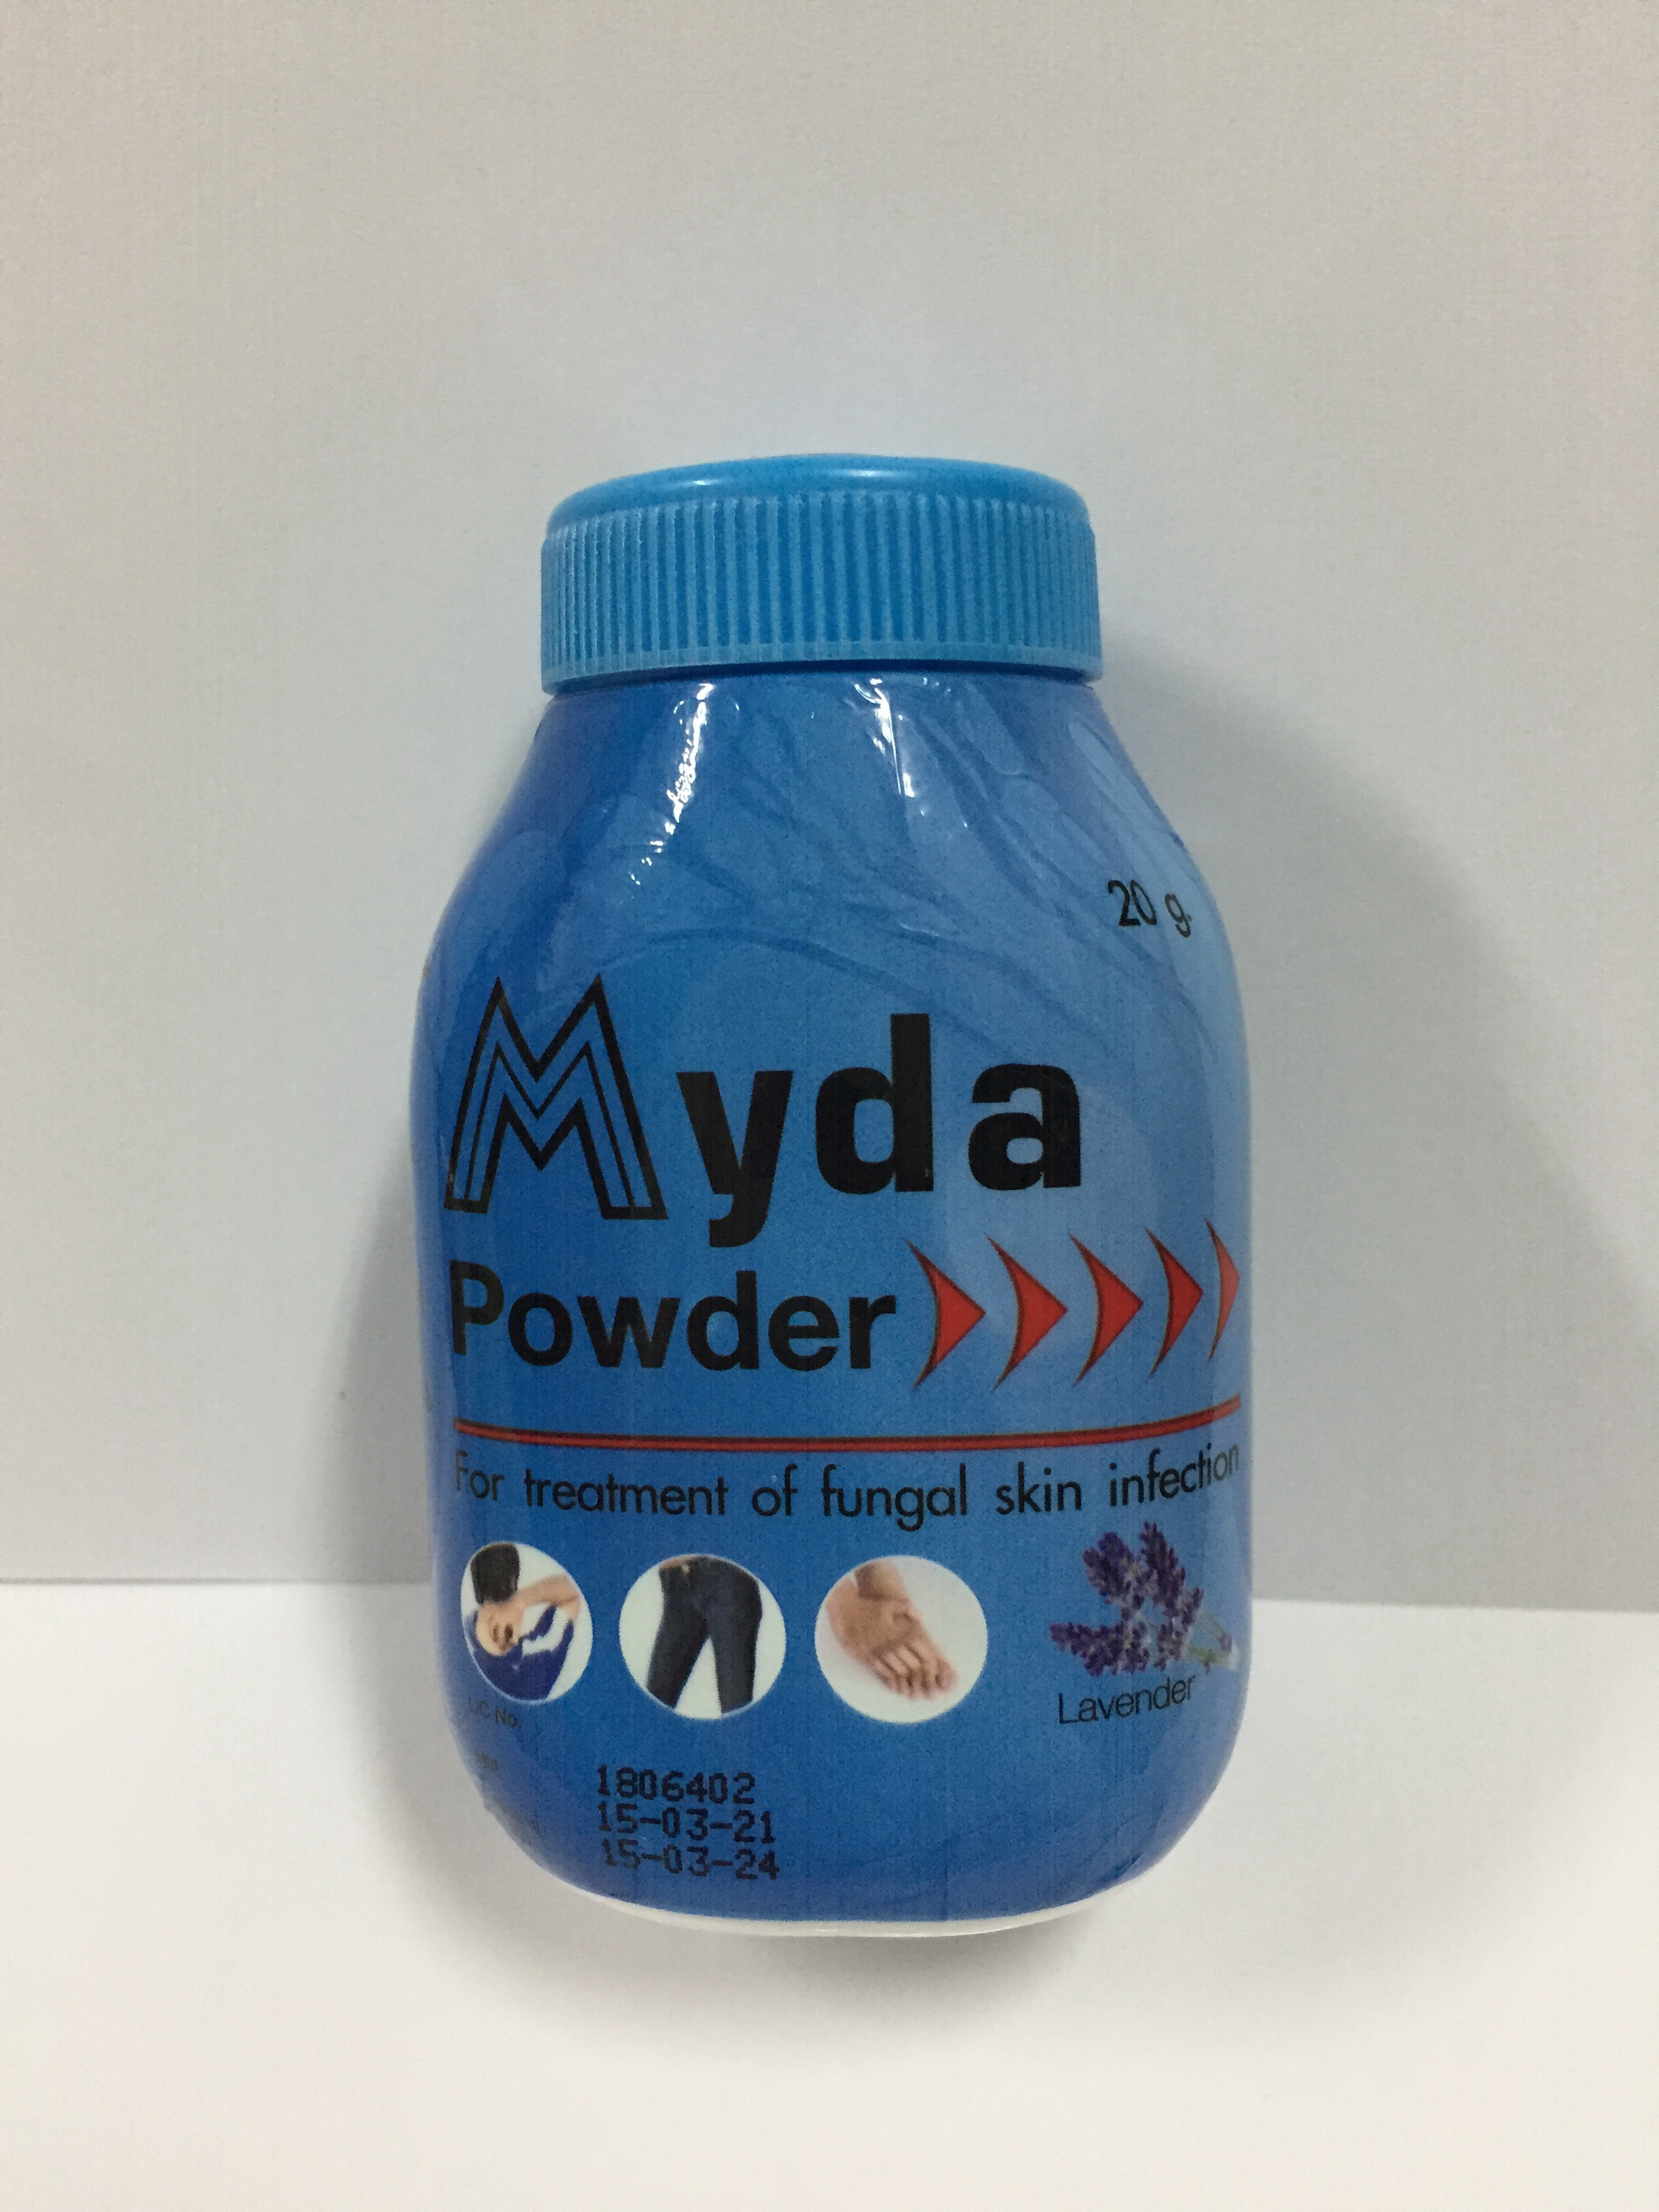 แป้งไมด้า 20g- Myda Powder 20 gms - แป้งไมด้า แก้คัน ชนิดผง ขนาด 20 กรัม